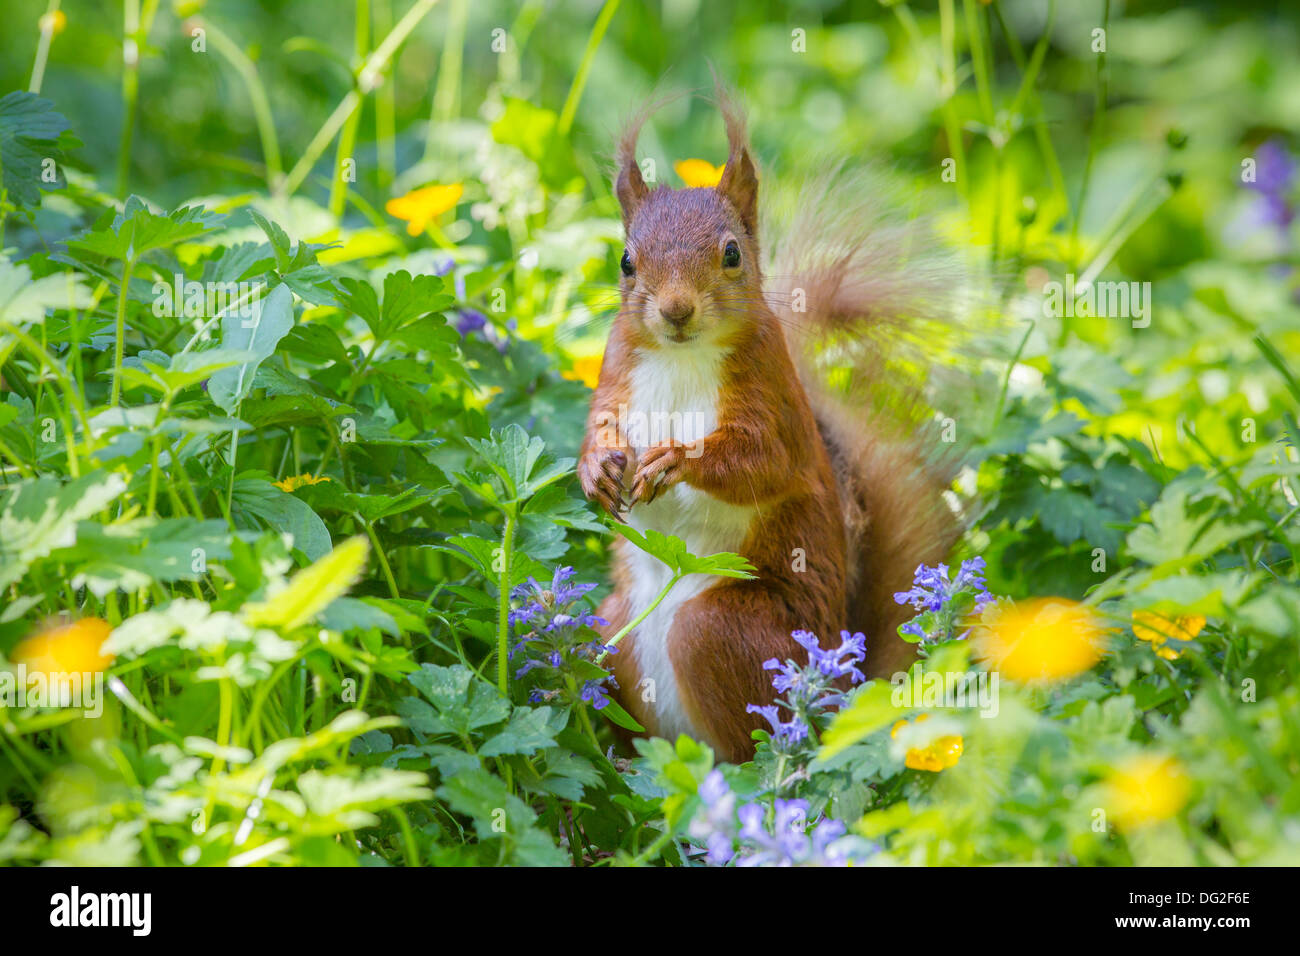 Red scoiattolo (Sciurus vulgaris) sat in fioritura renoncules nel bosco impostazione. Yorkshire Dales, North Yorkshire, Regno Unito Foto Stock